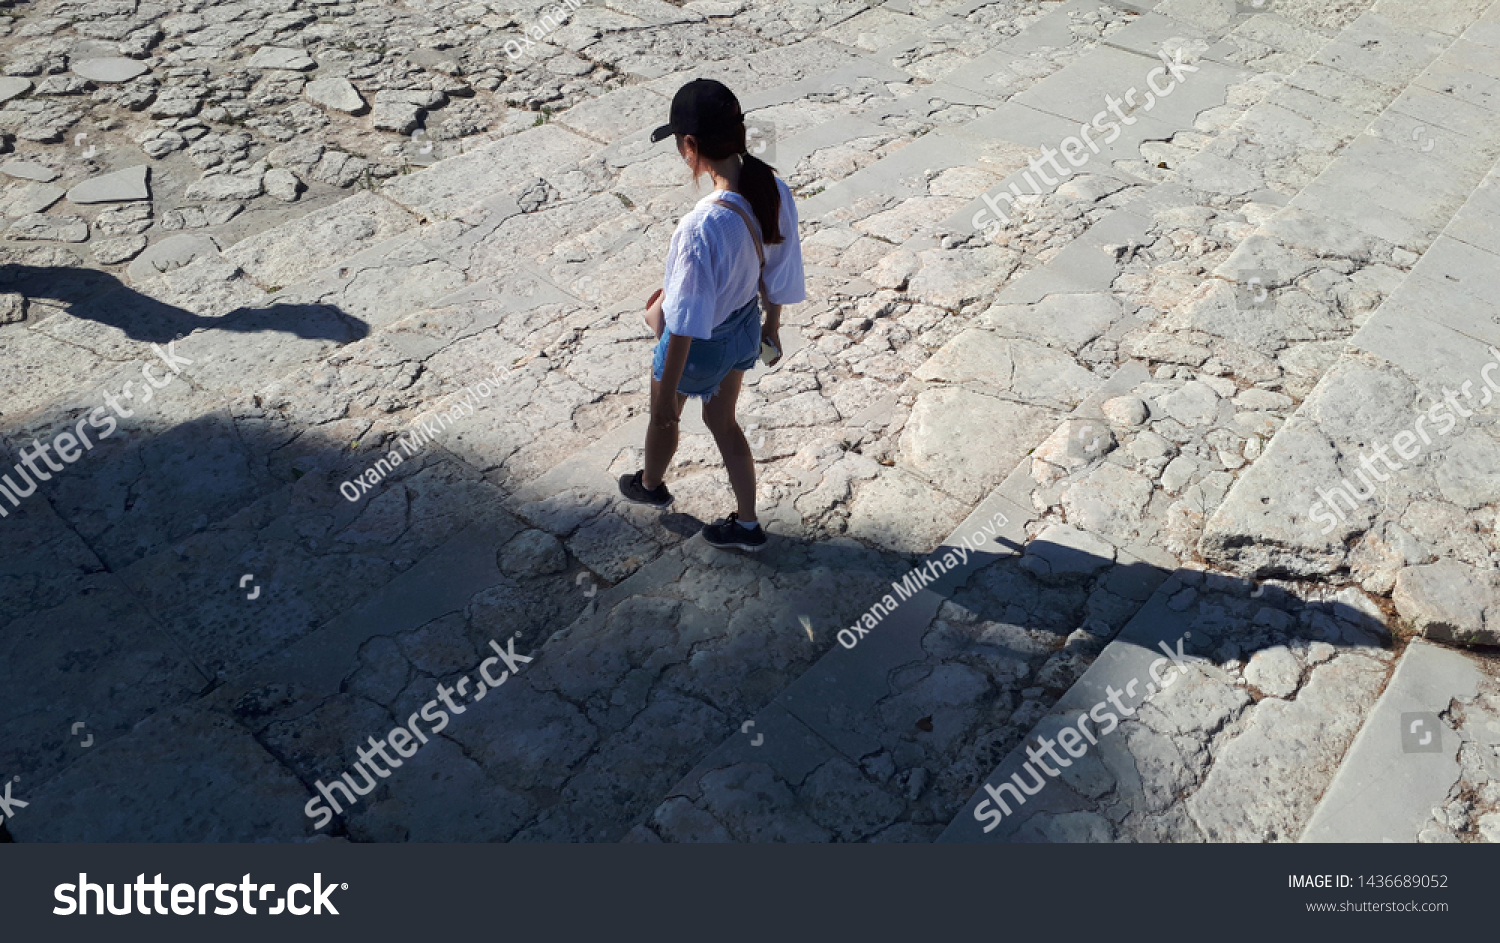 Children's shadow on a street in Crete